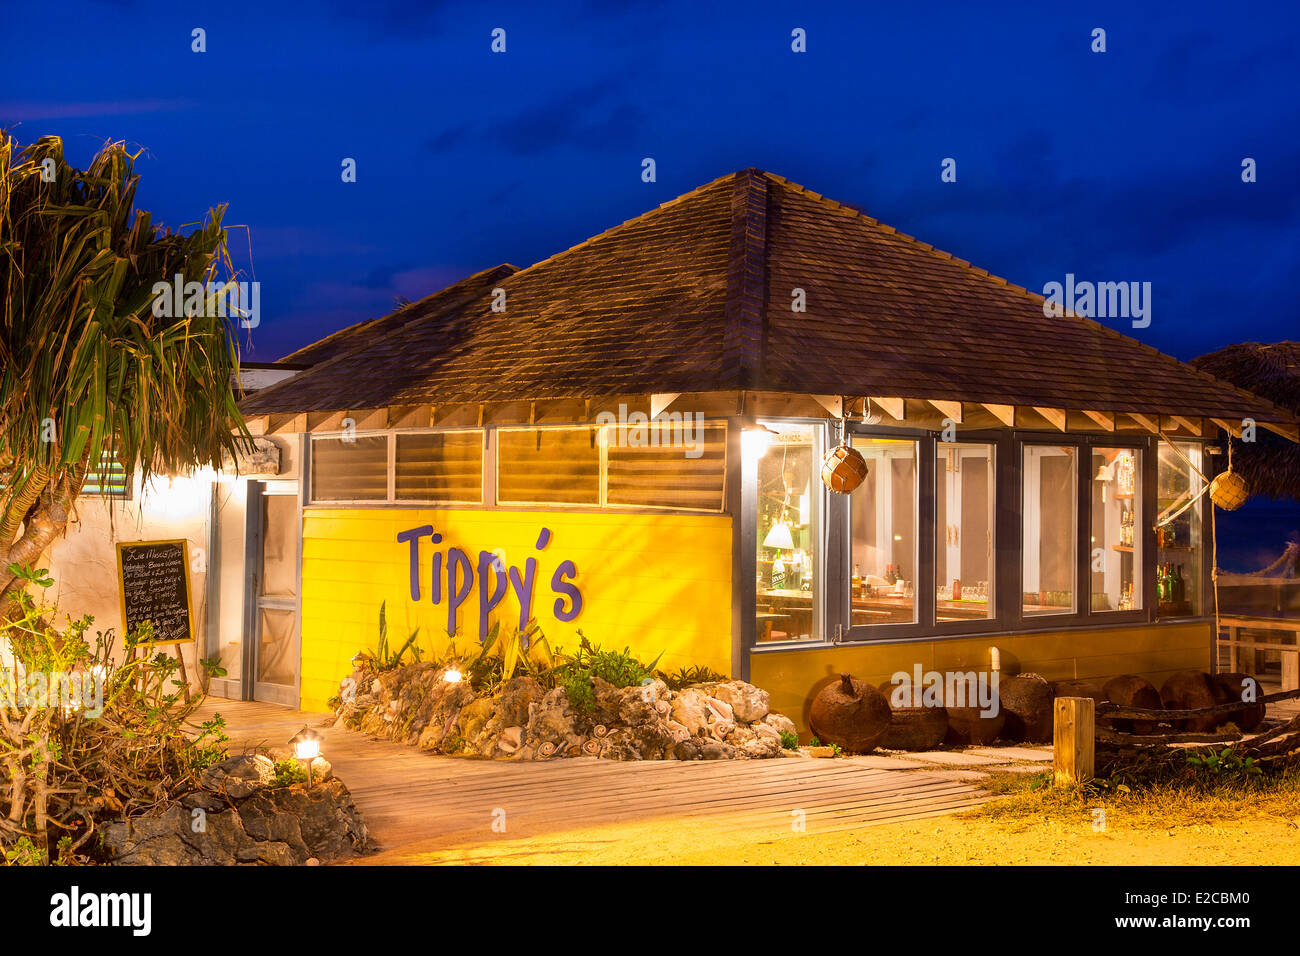 Bahamas, Eleuthera Island, The Tippy's Restaurant Stock Photo